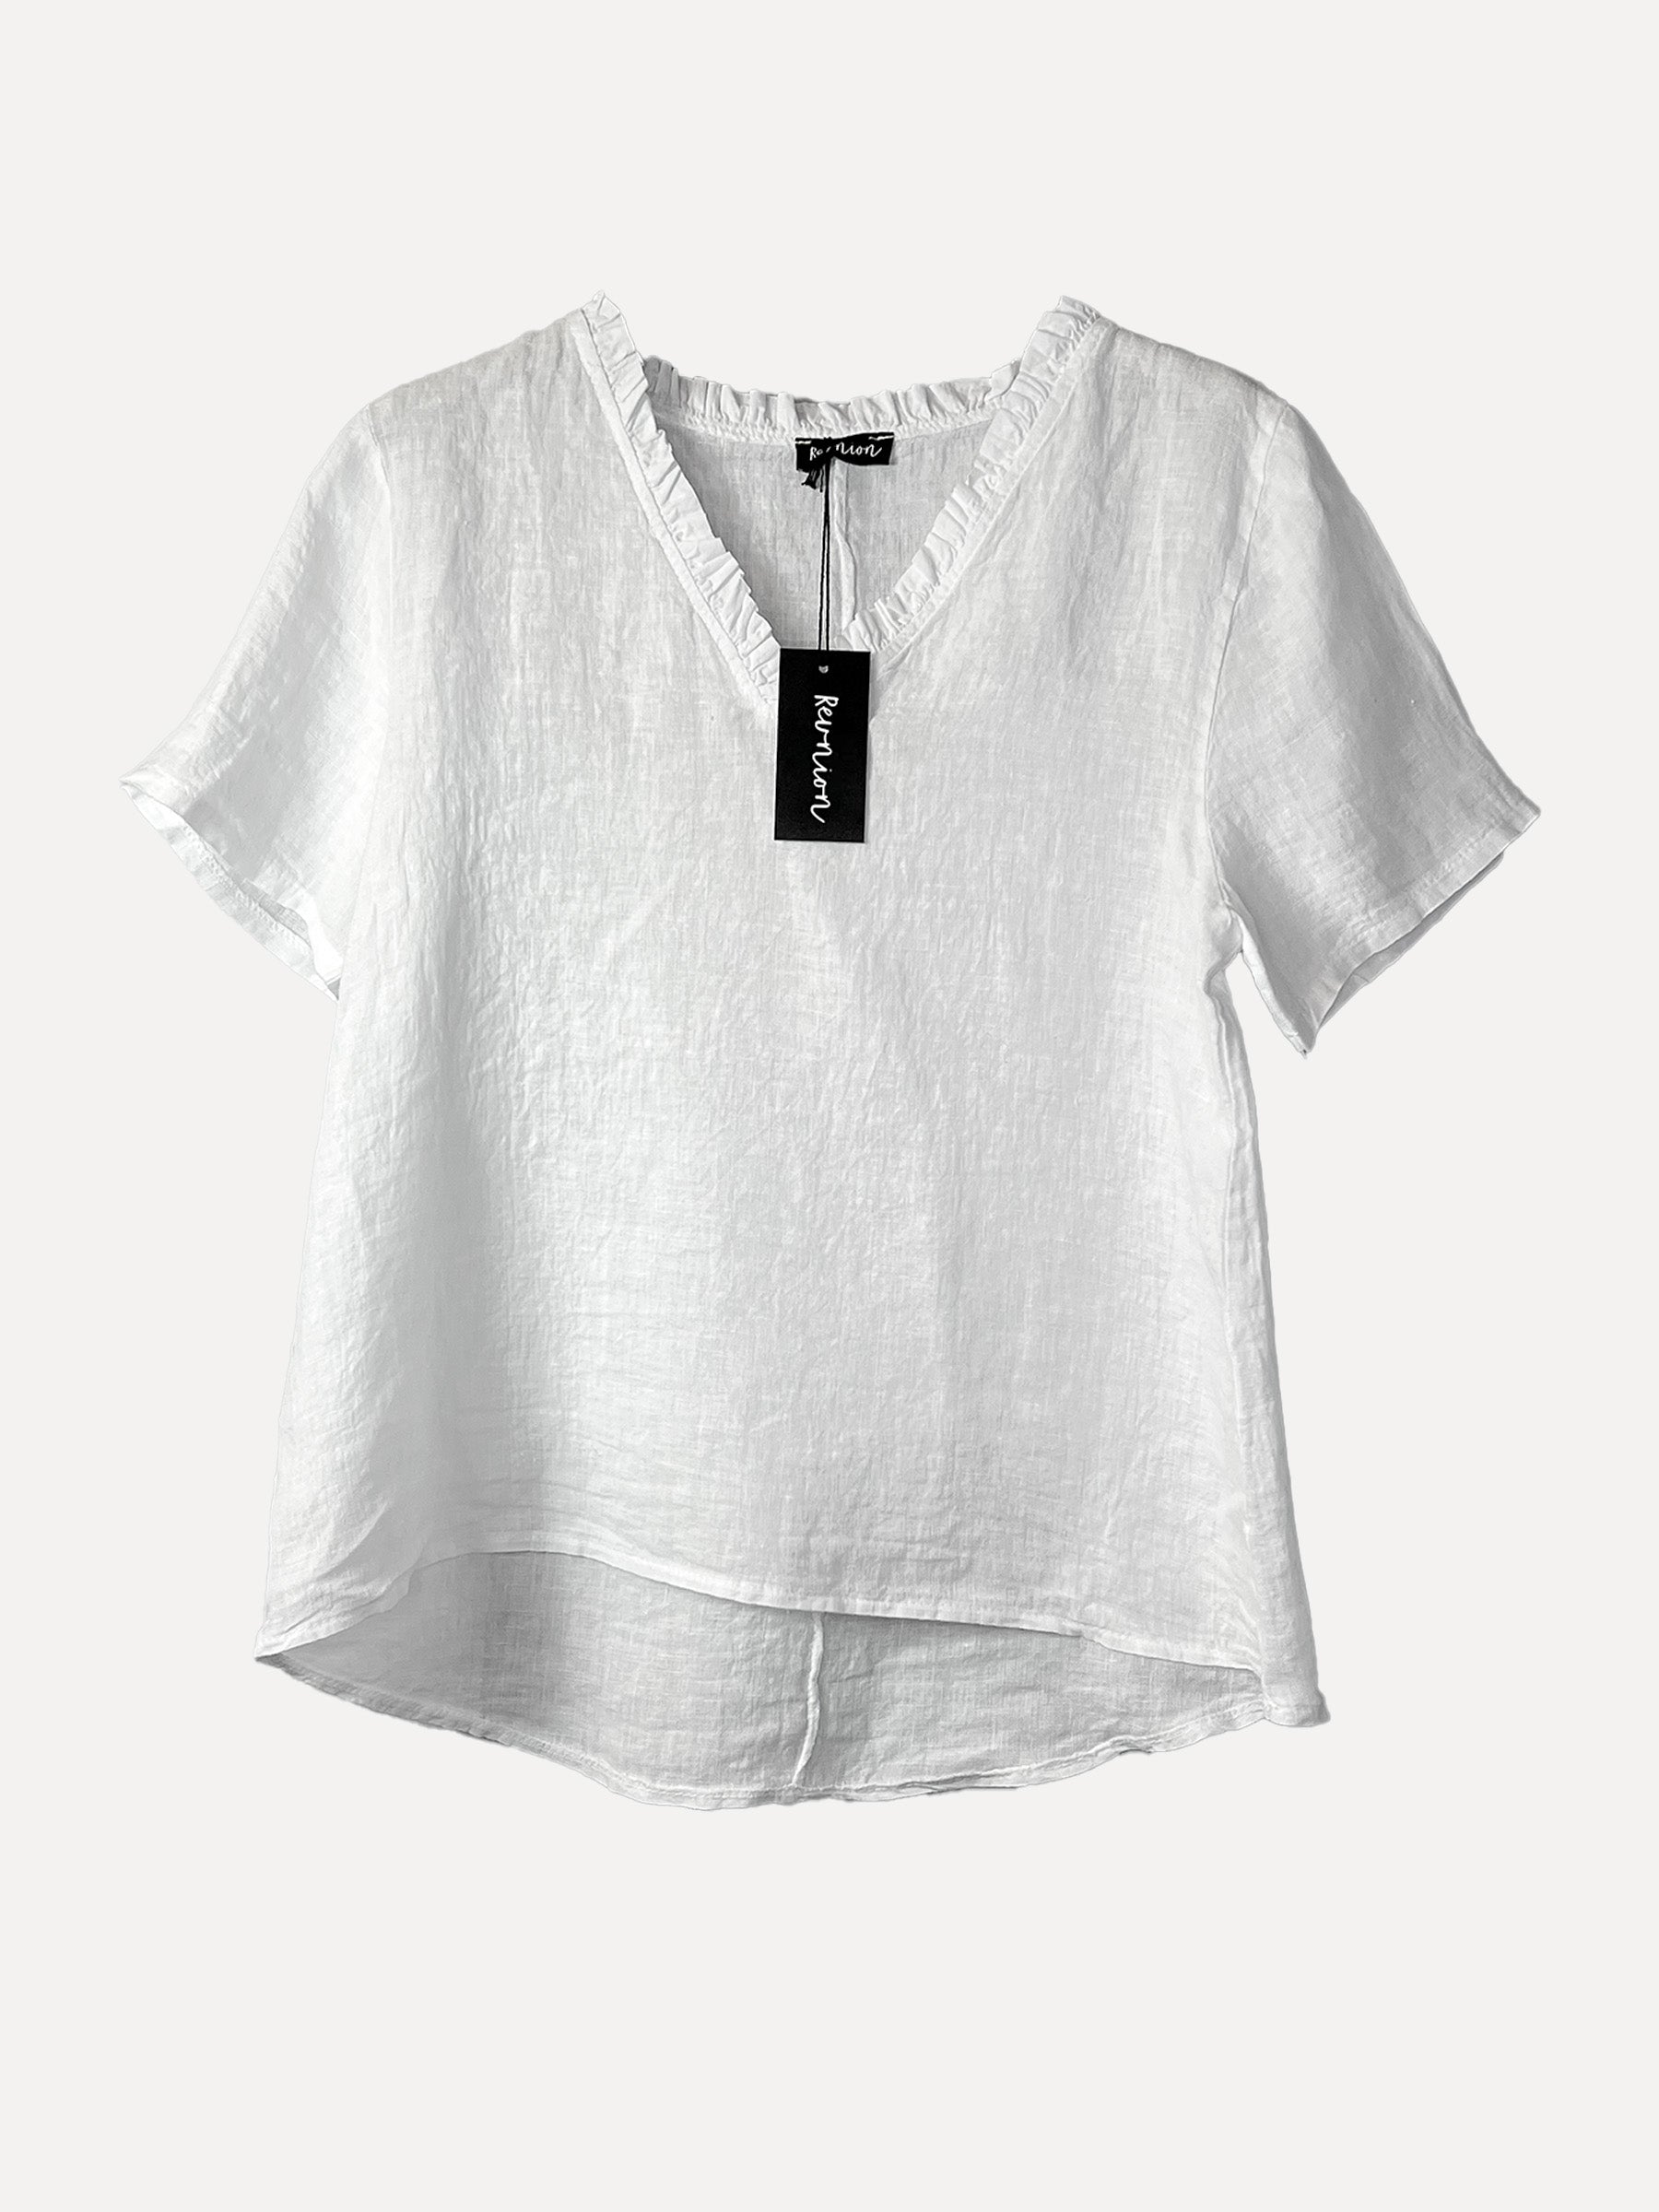 GRETA T-Shirt, White